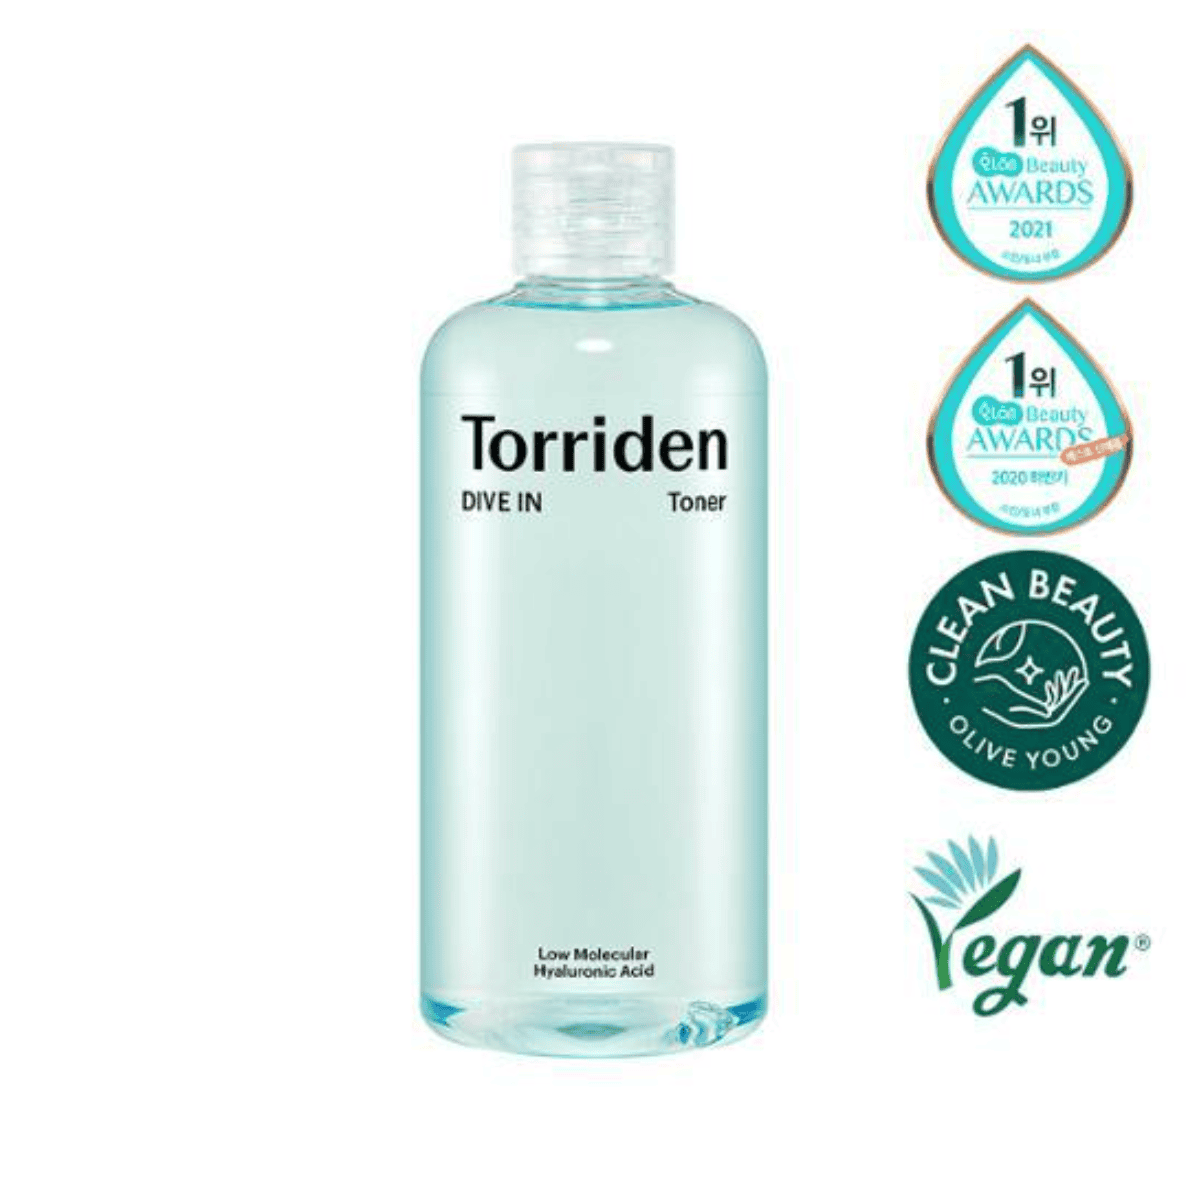 Torriden	DIVE-IN Low Molecular Hyaluronic Acid Toner